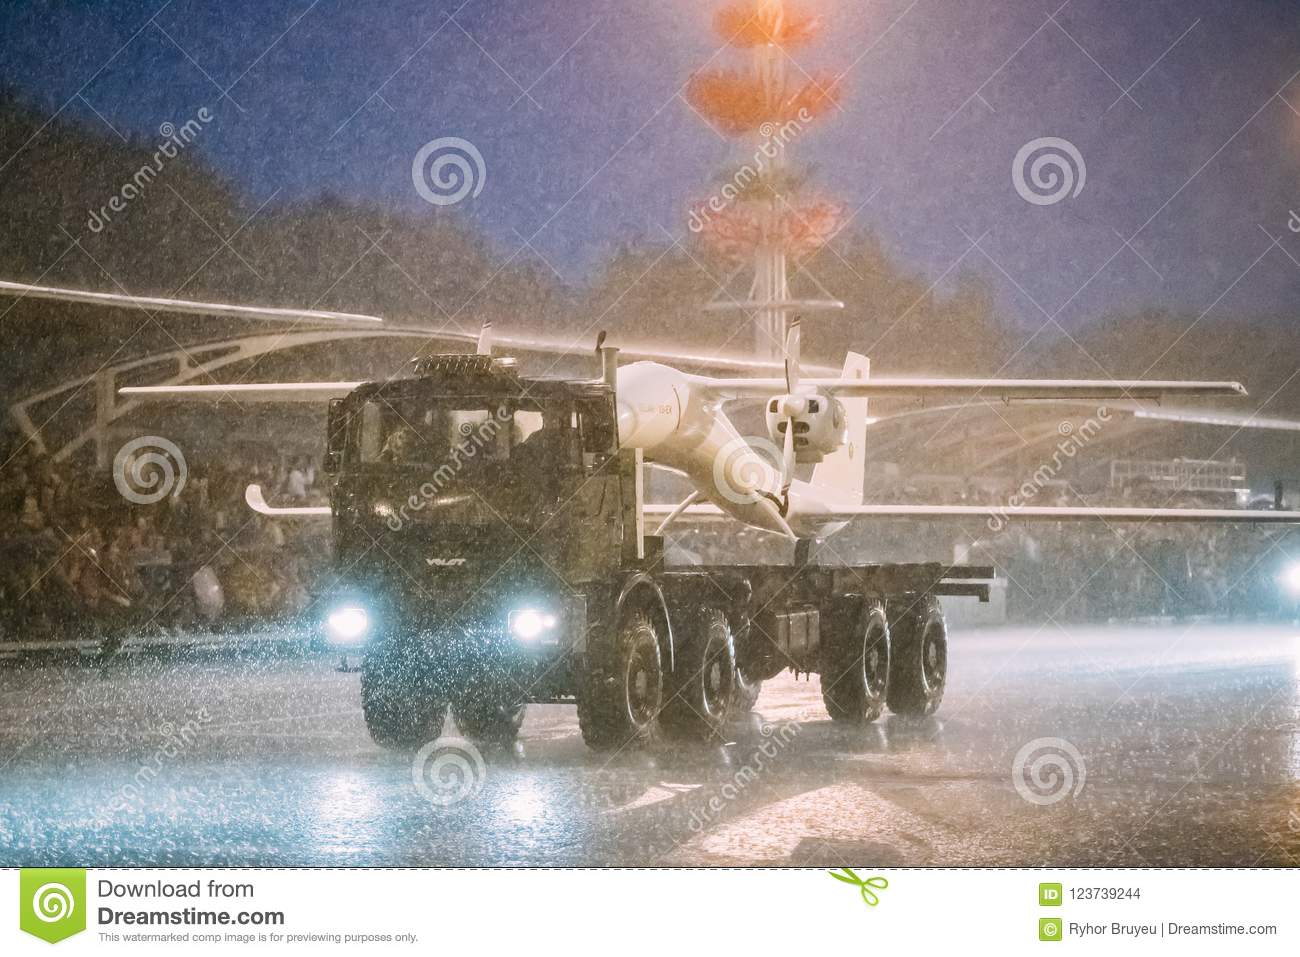 belarus-minsk-aircraft-belar-ys-ex-moving-along-street-training-parade-independence-day-belarus-minsk-belarus-123739244.jpg